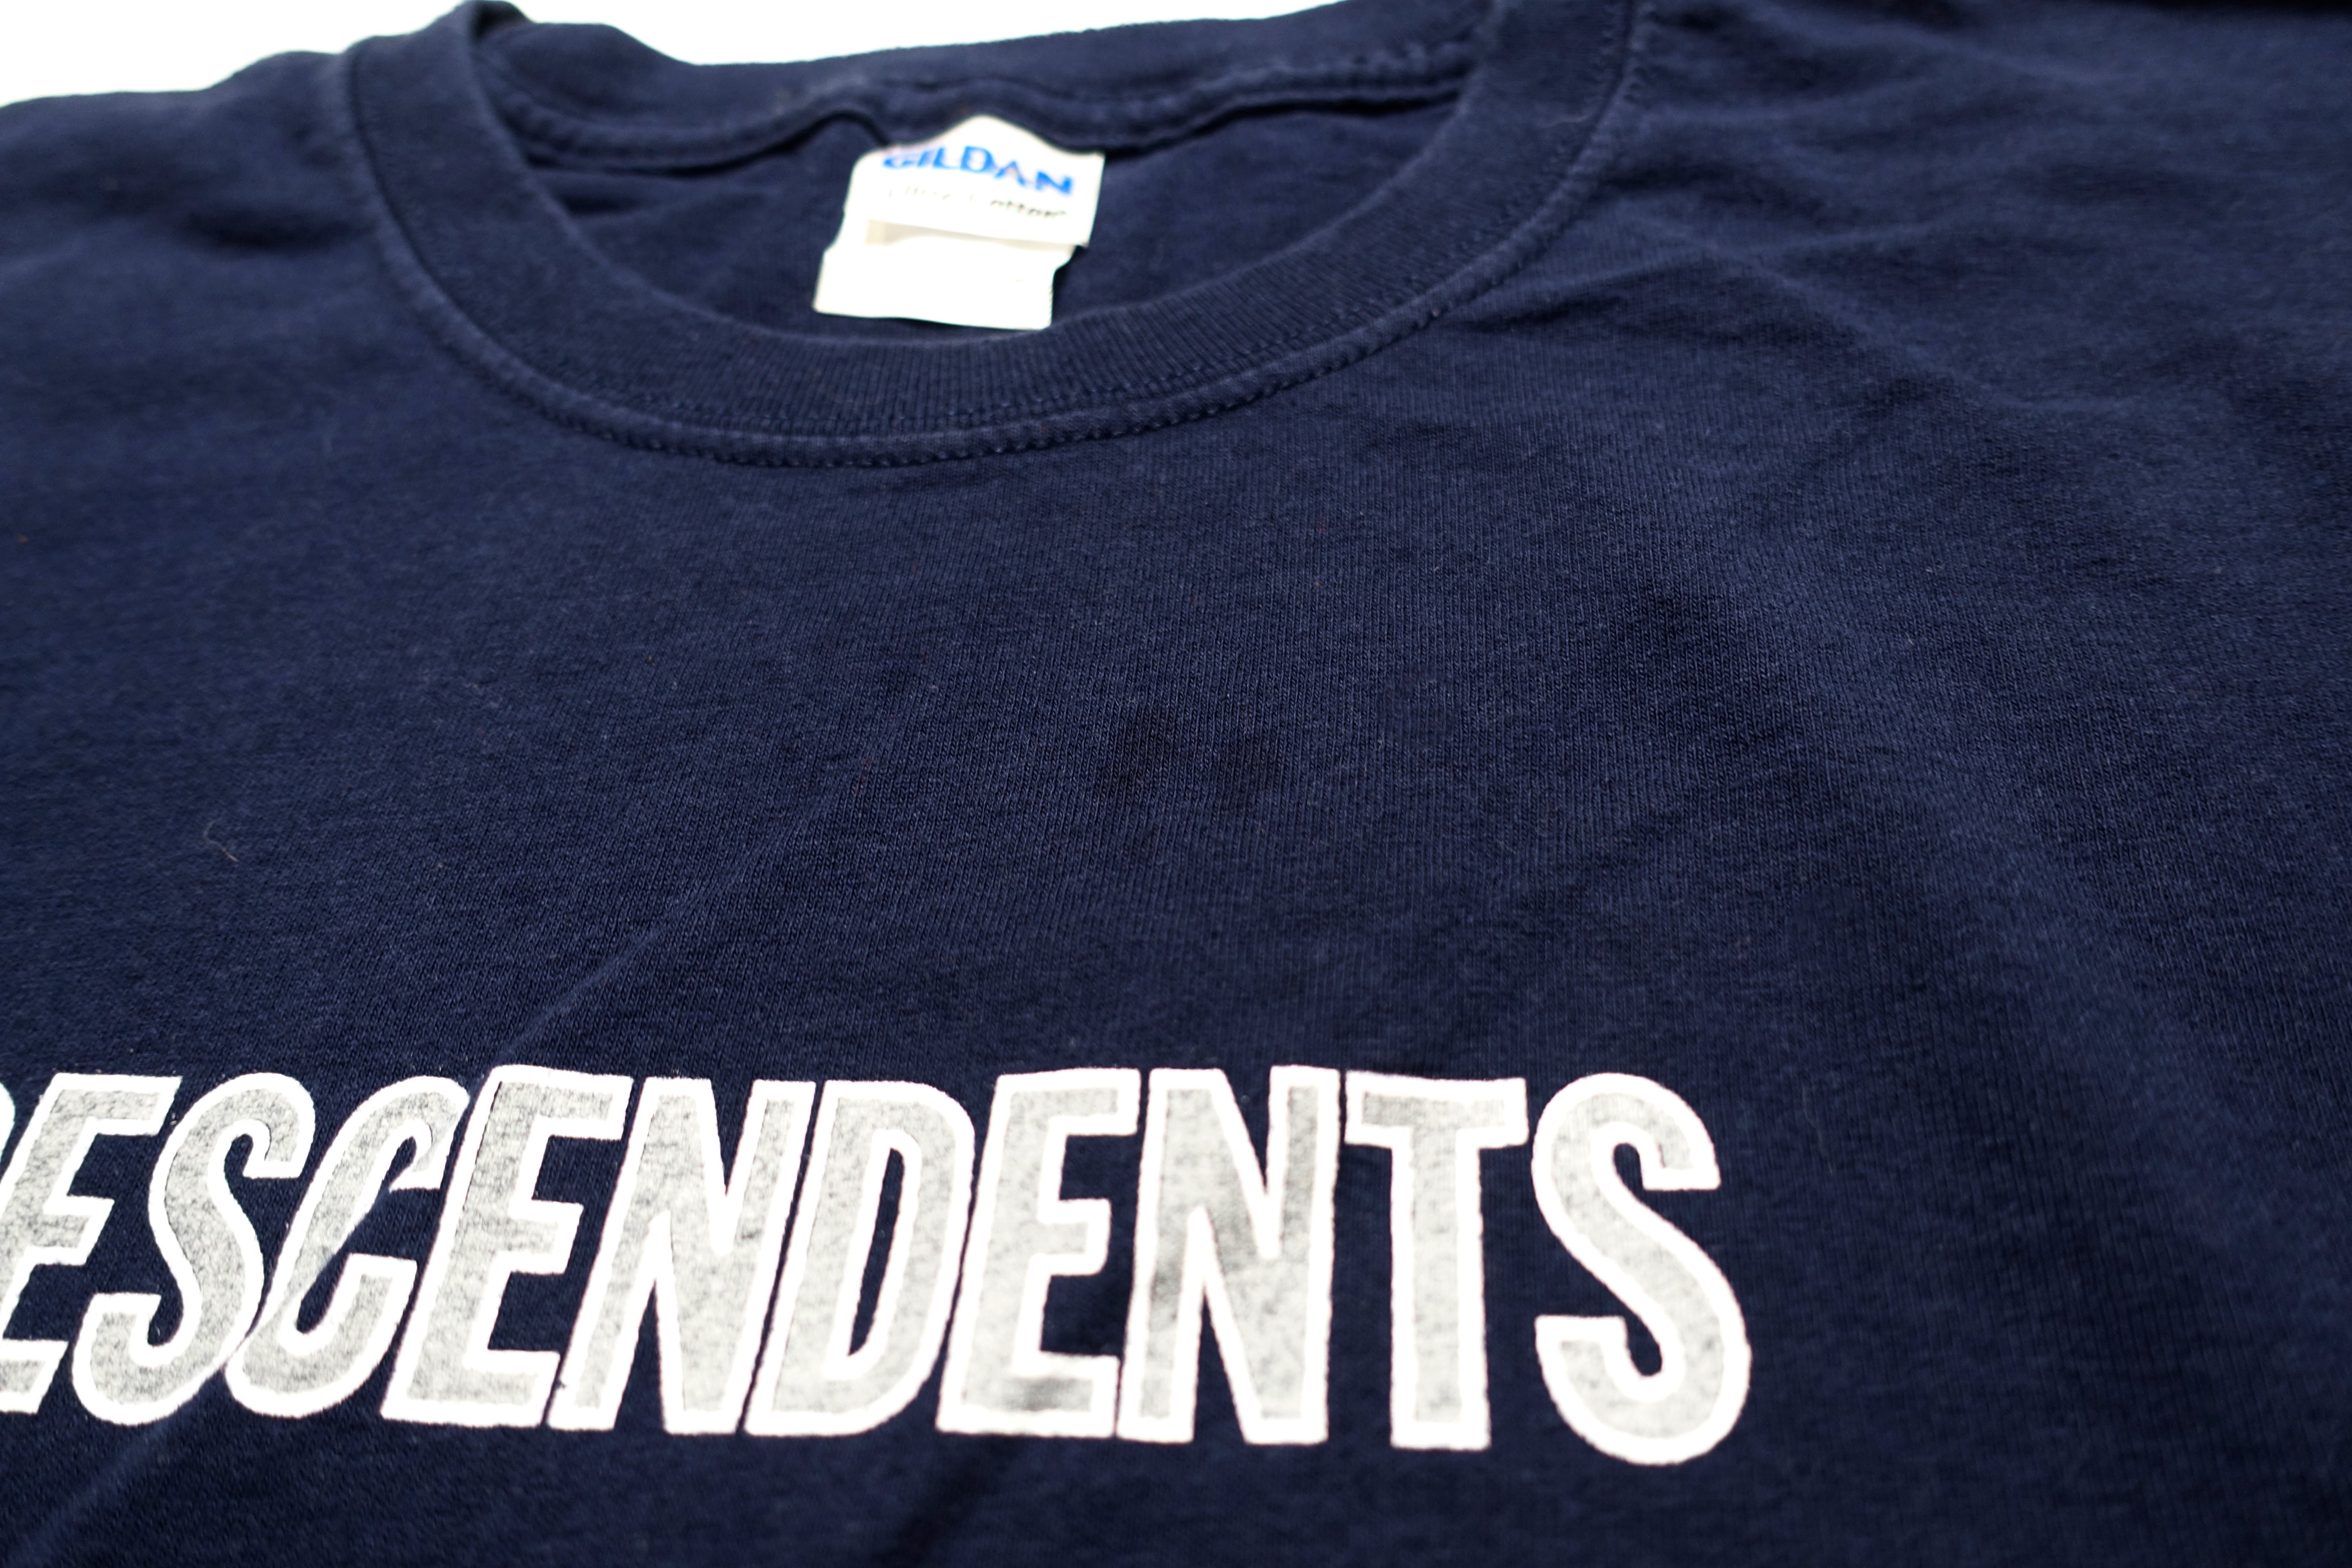 Descendents - Milo Long Sleeve Tour Shirt Size Large